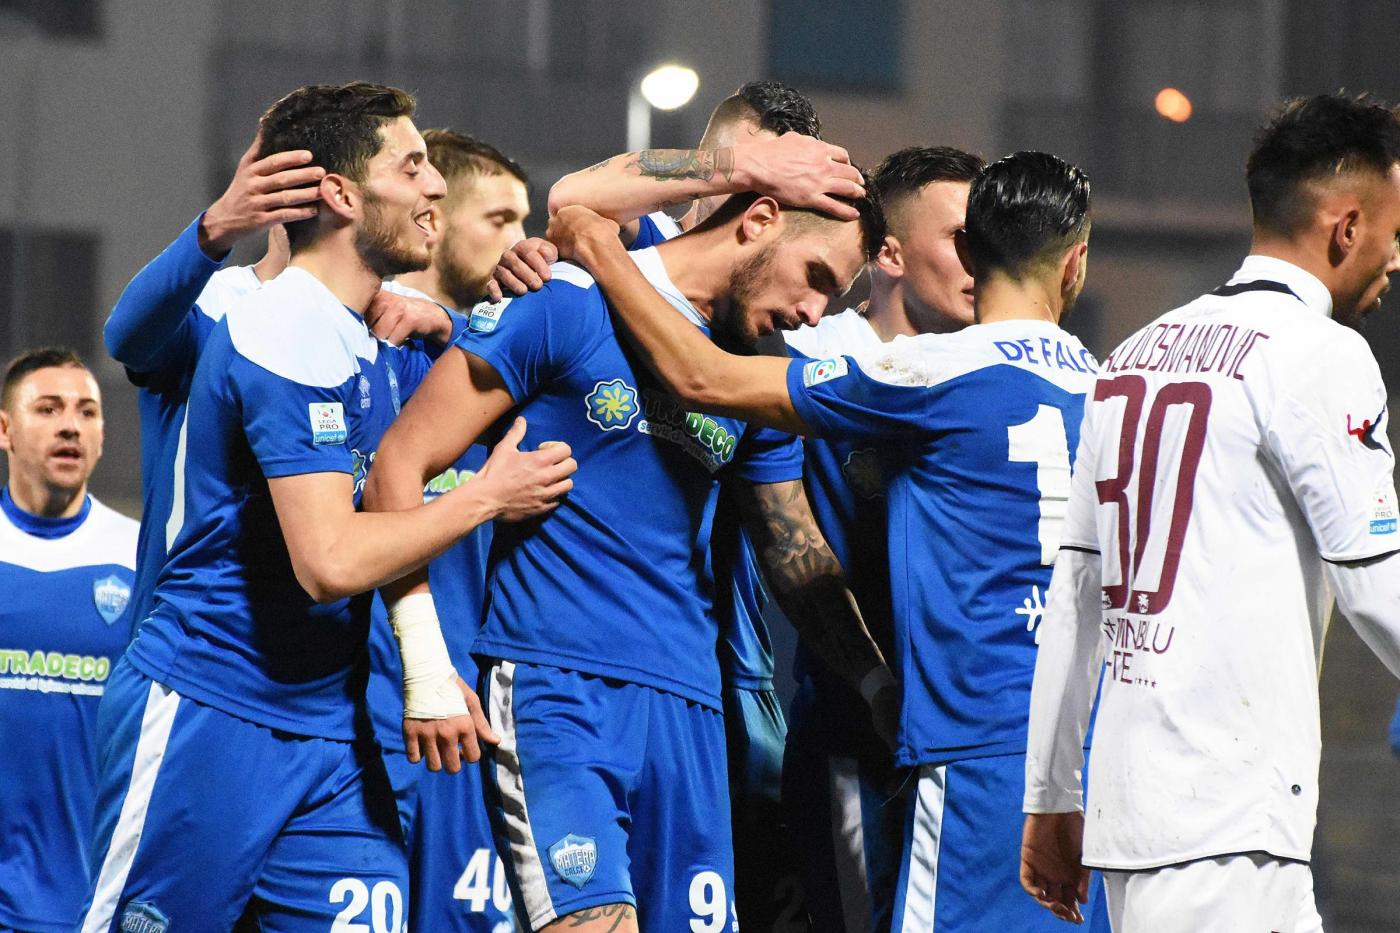 Matera-Viterbese 10 novembre: si gioca per il gruppo C della Serie C. Si affrontano 2 squadre in grossa difficoltà nell'ultimo periodo.